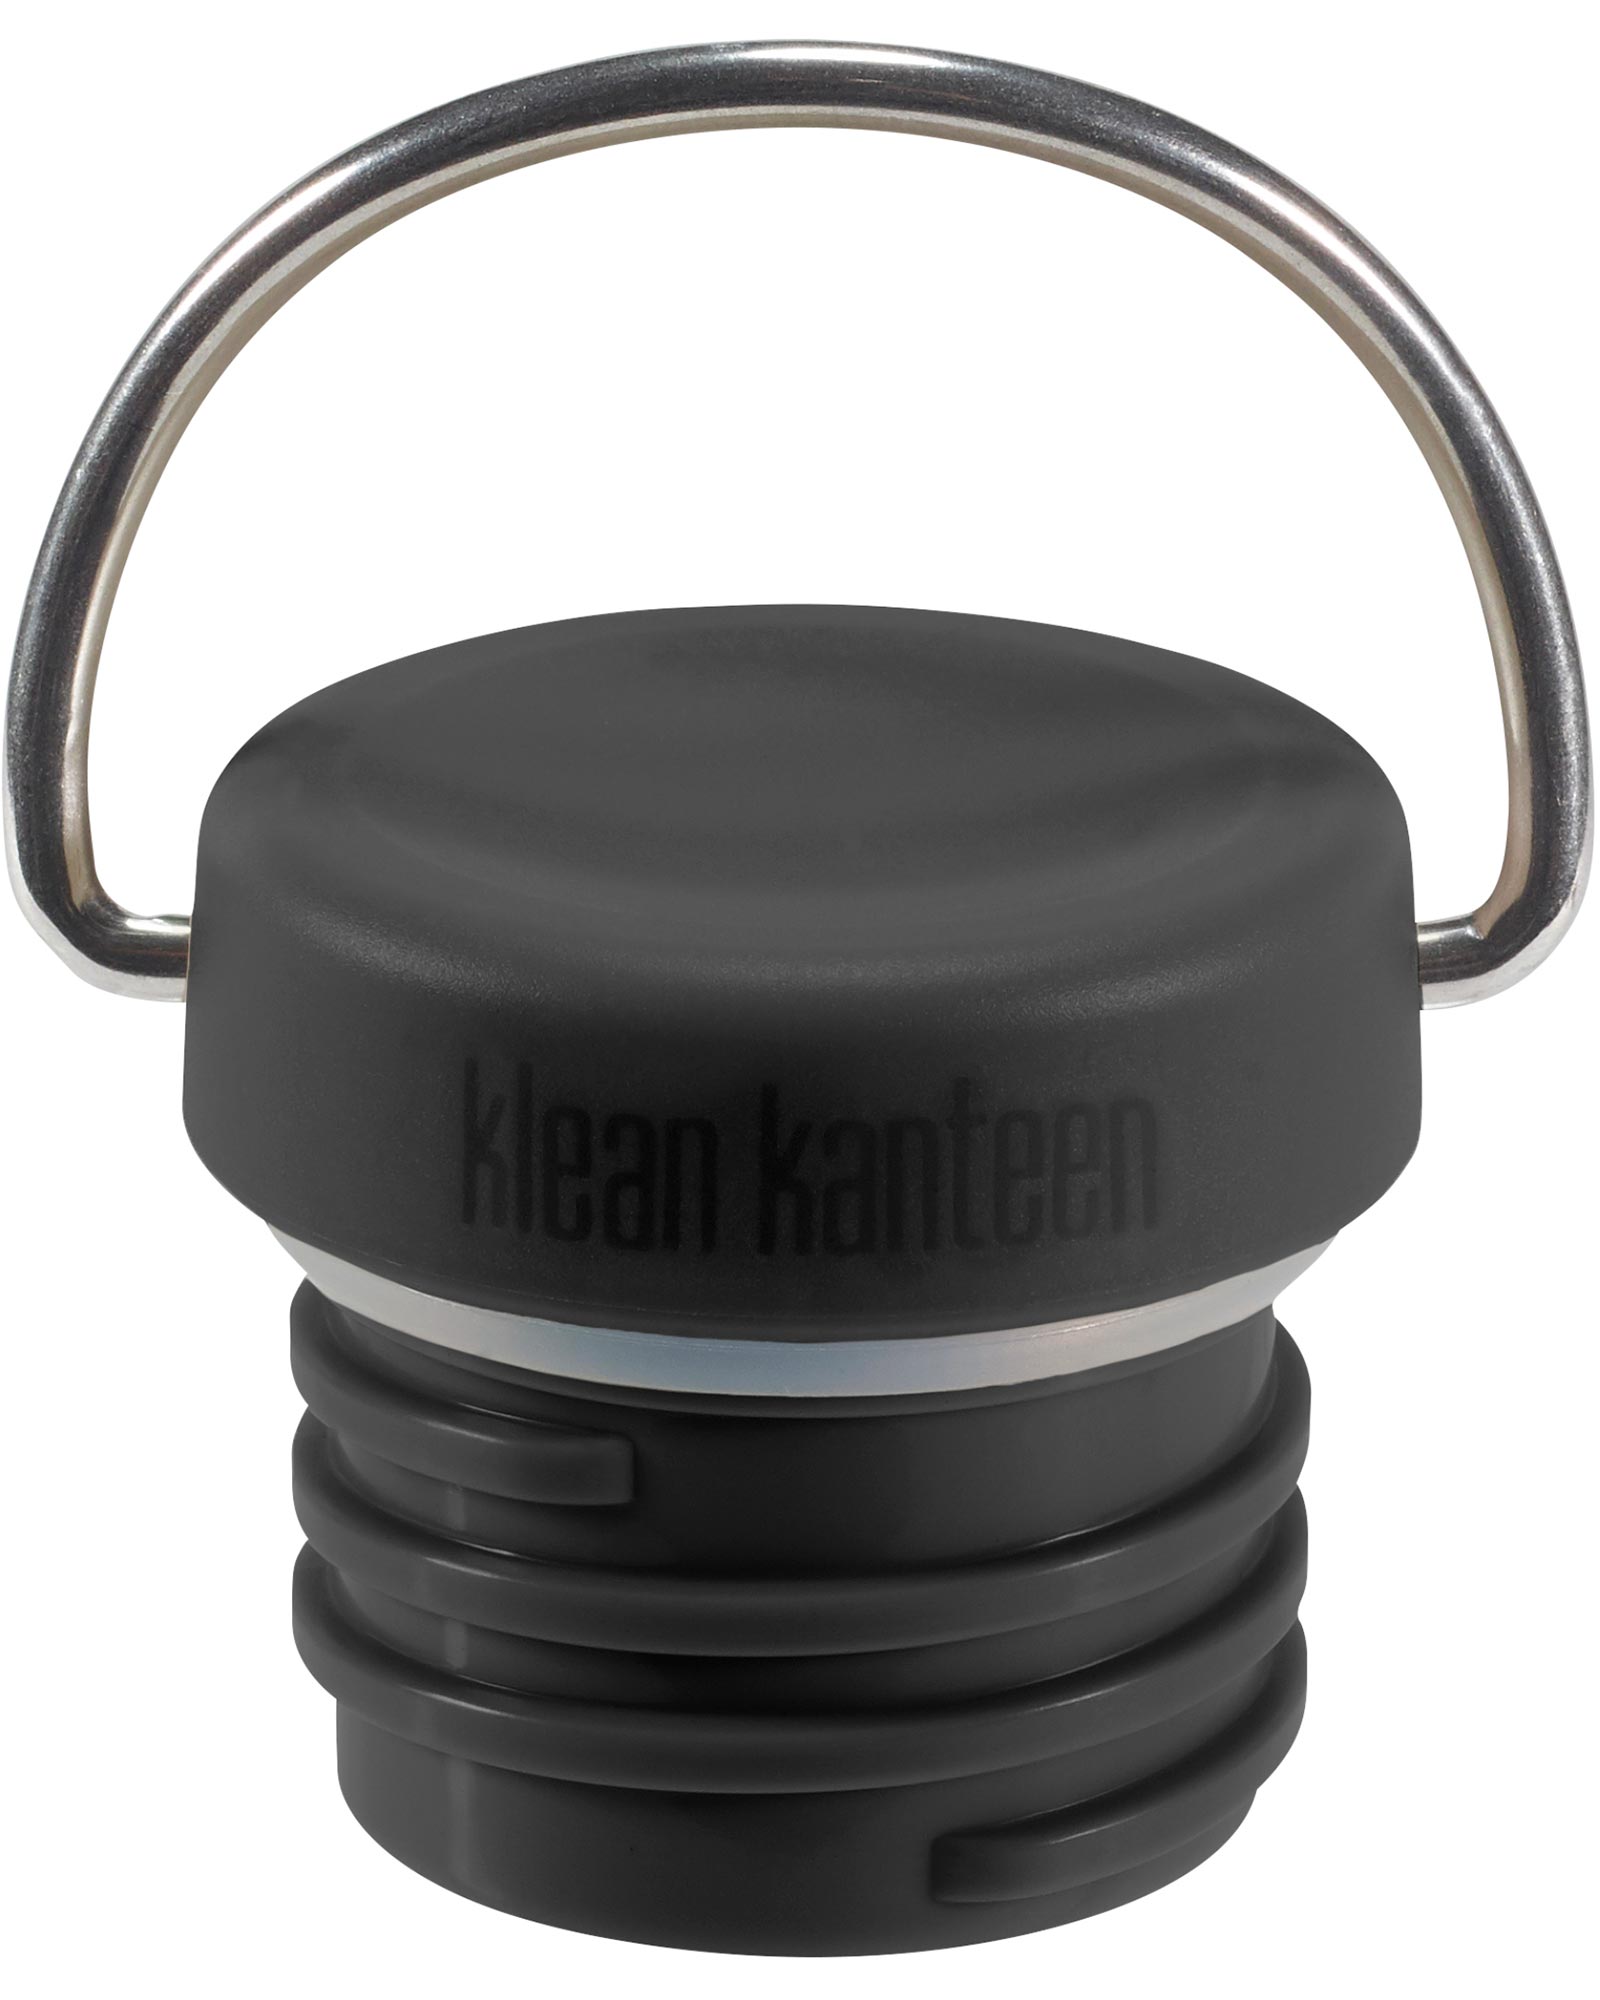 Klean Kanteen Loop Cap with Bale - black